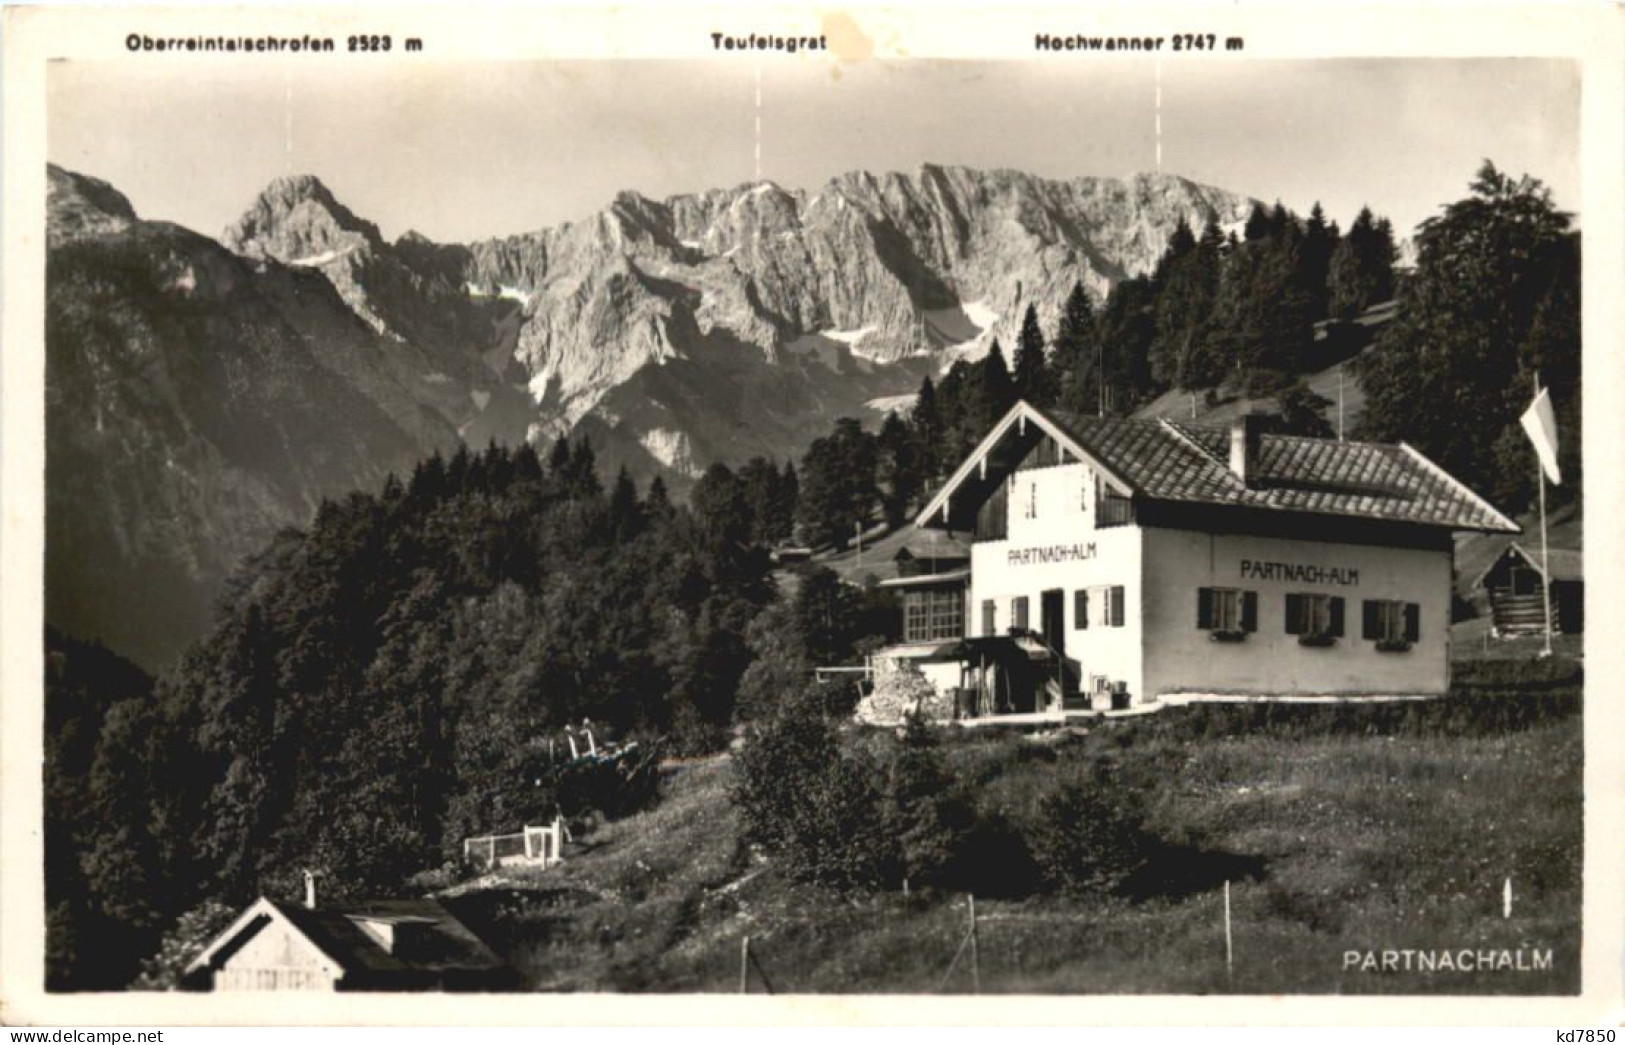 Partnachalm - Garmisch-Partenkirchen